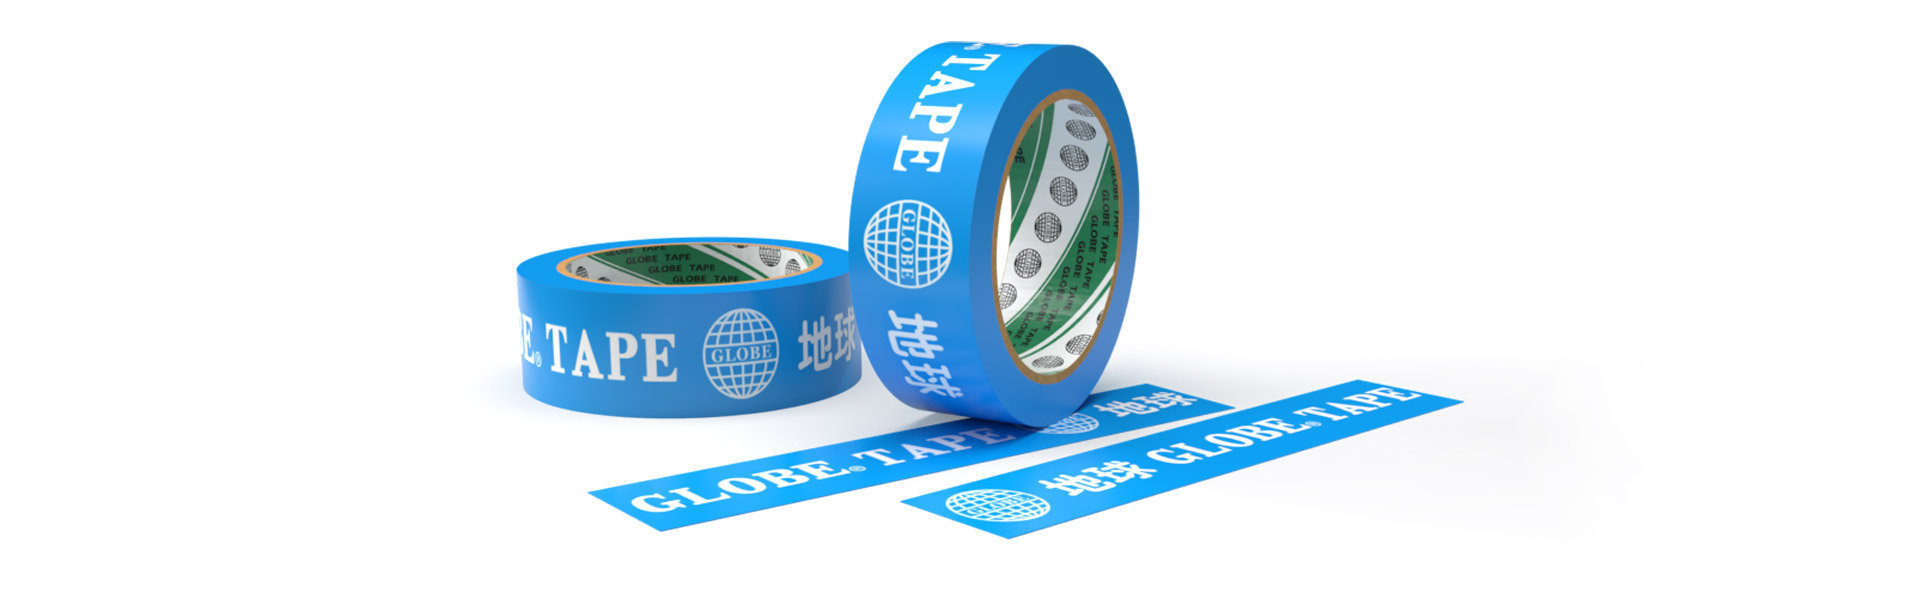 Globe Tape OPP OEM ODM Printed Packaging Tape 